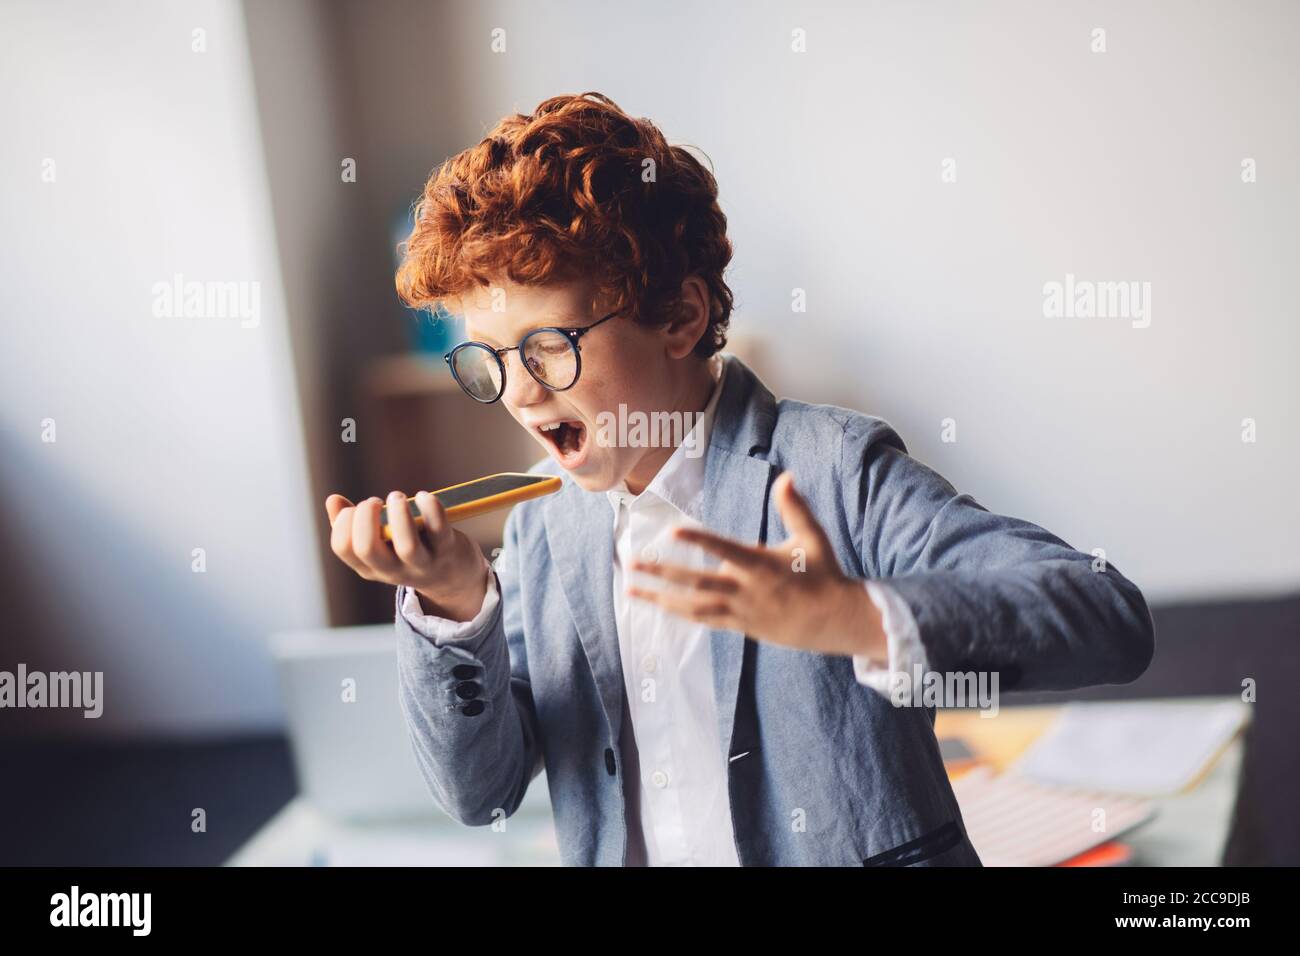 Niño de pelo rojo en un traje gritando algo mientras habla teléfono Foto de stock